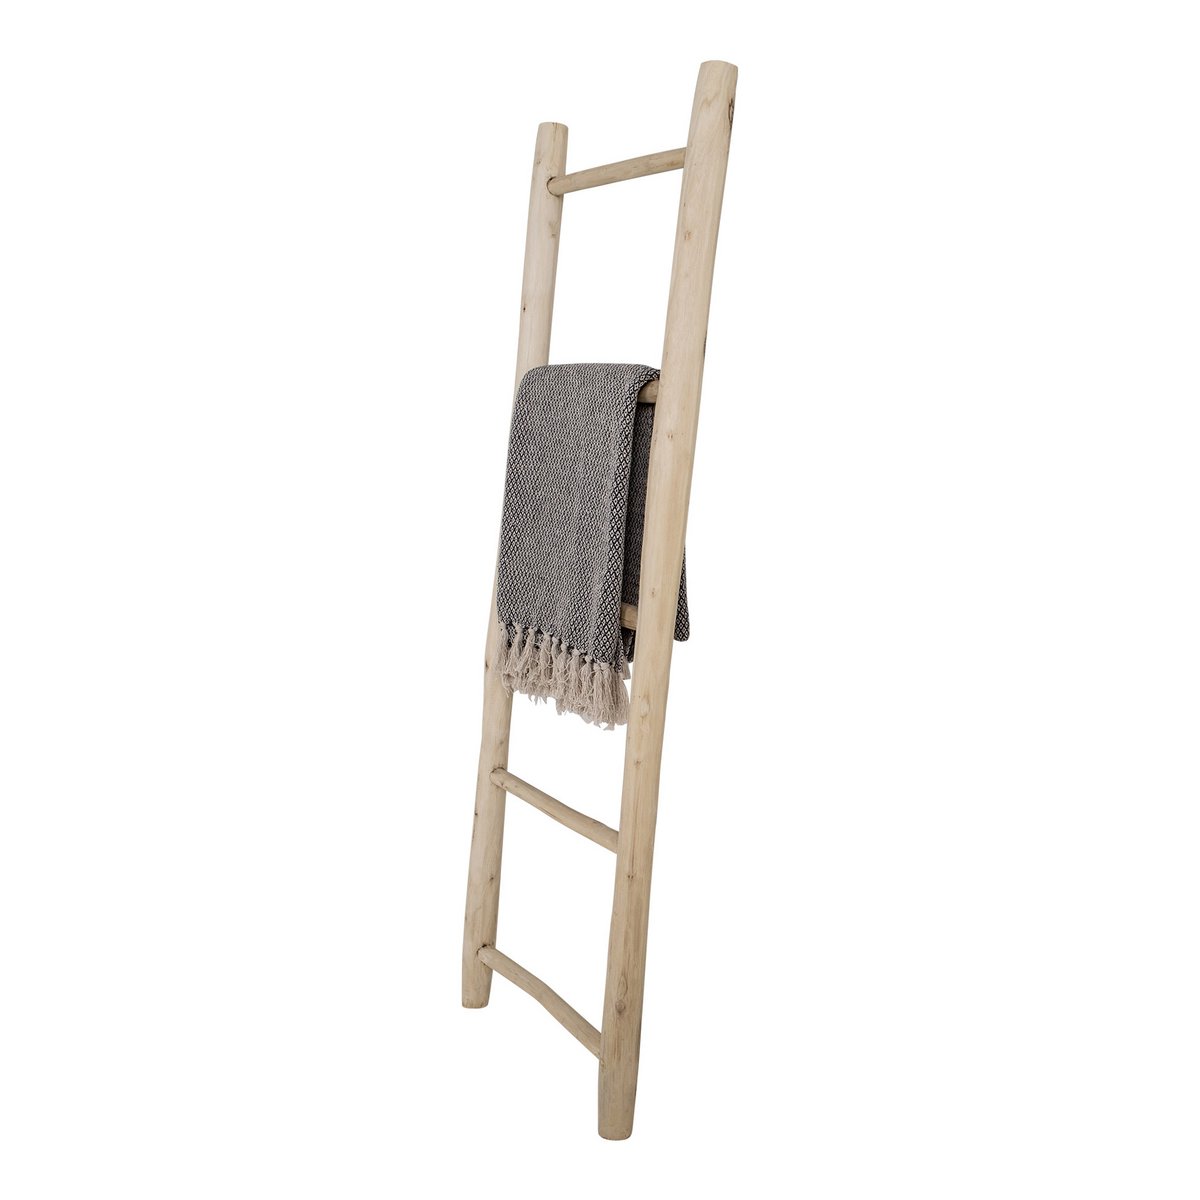 Teak ladder, decorative ladder